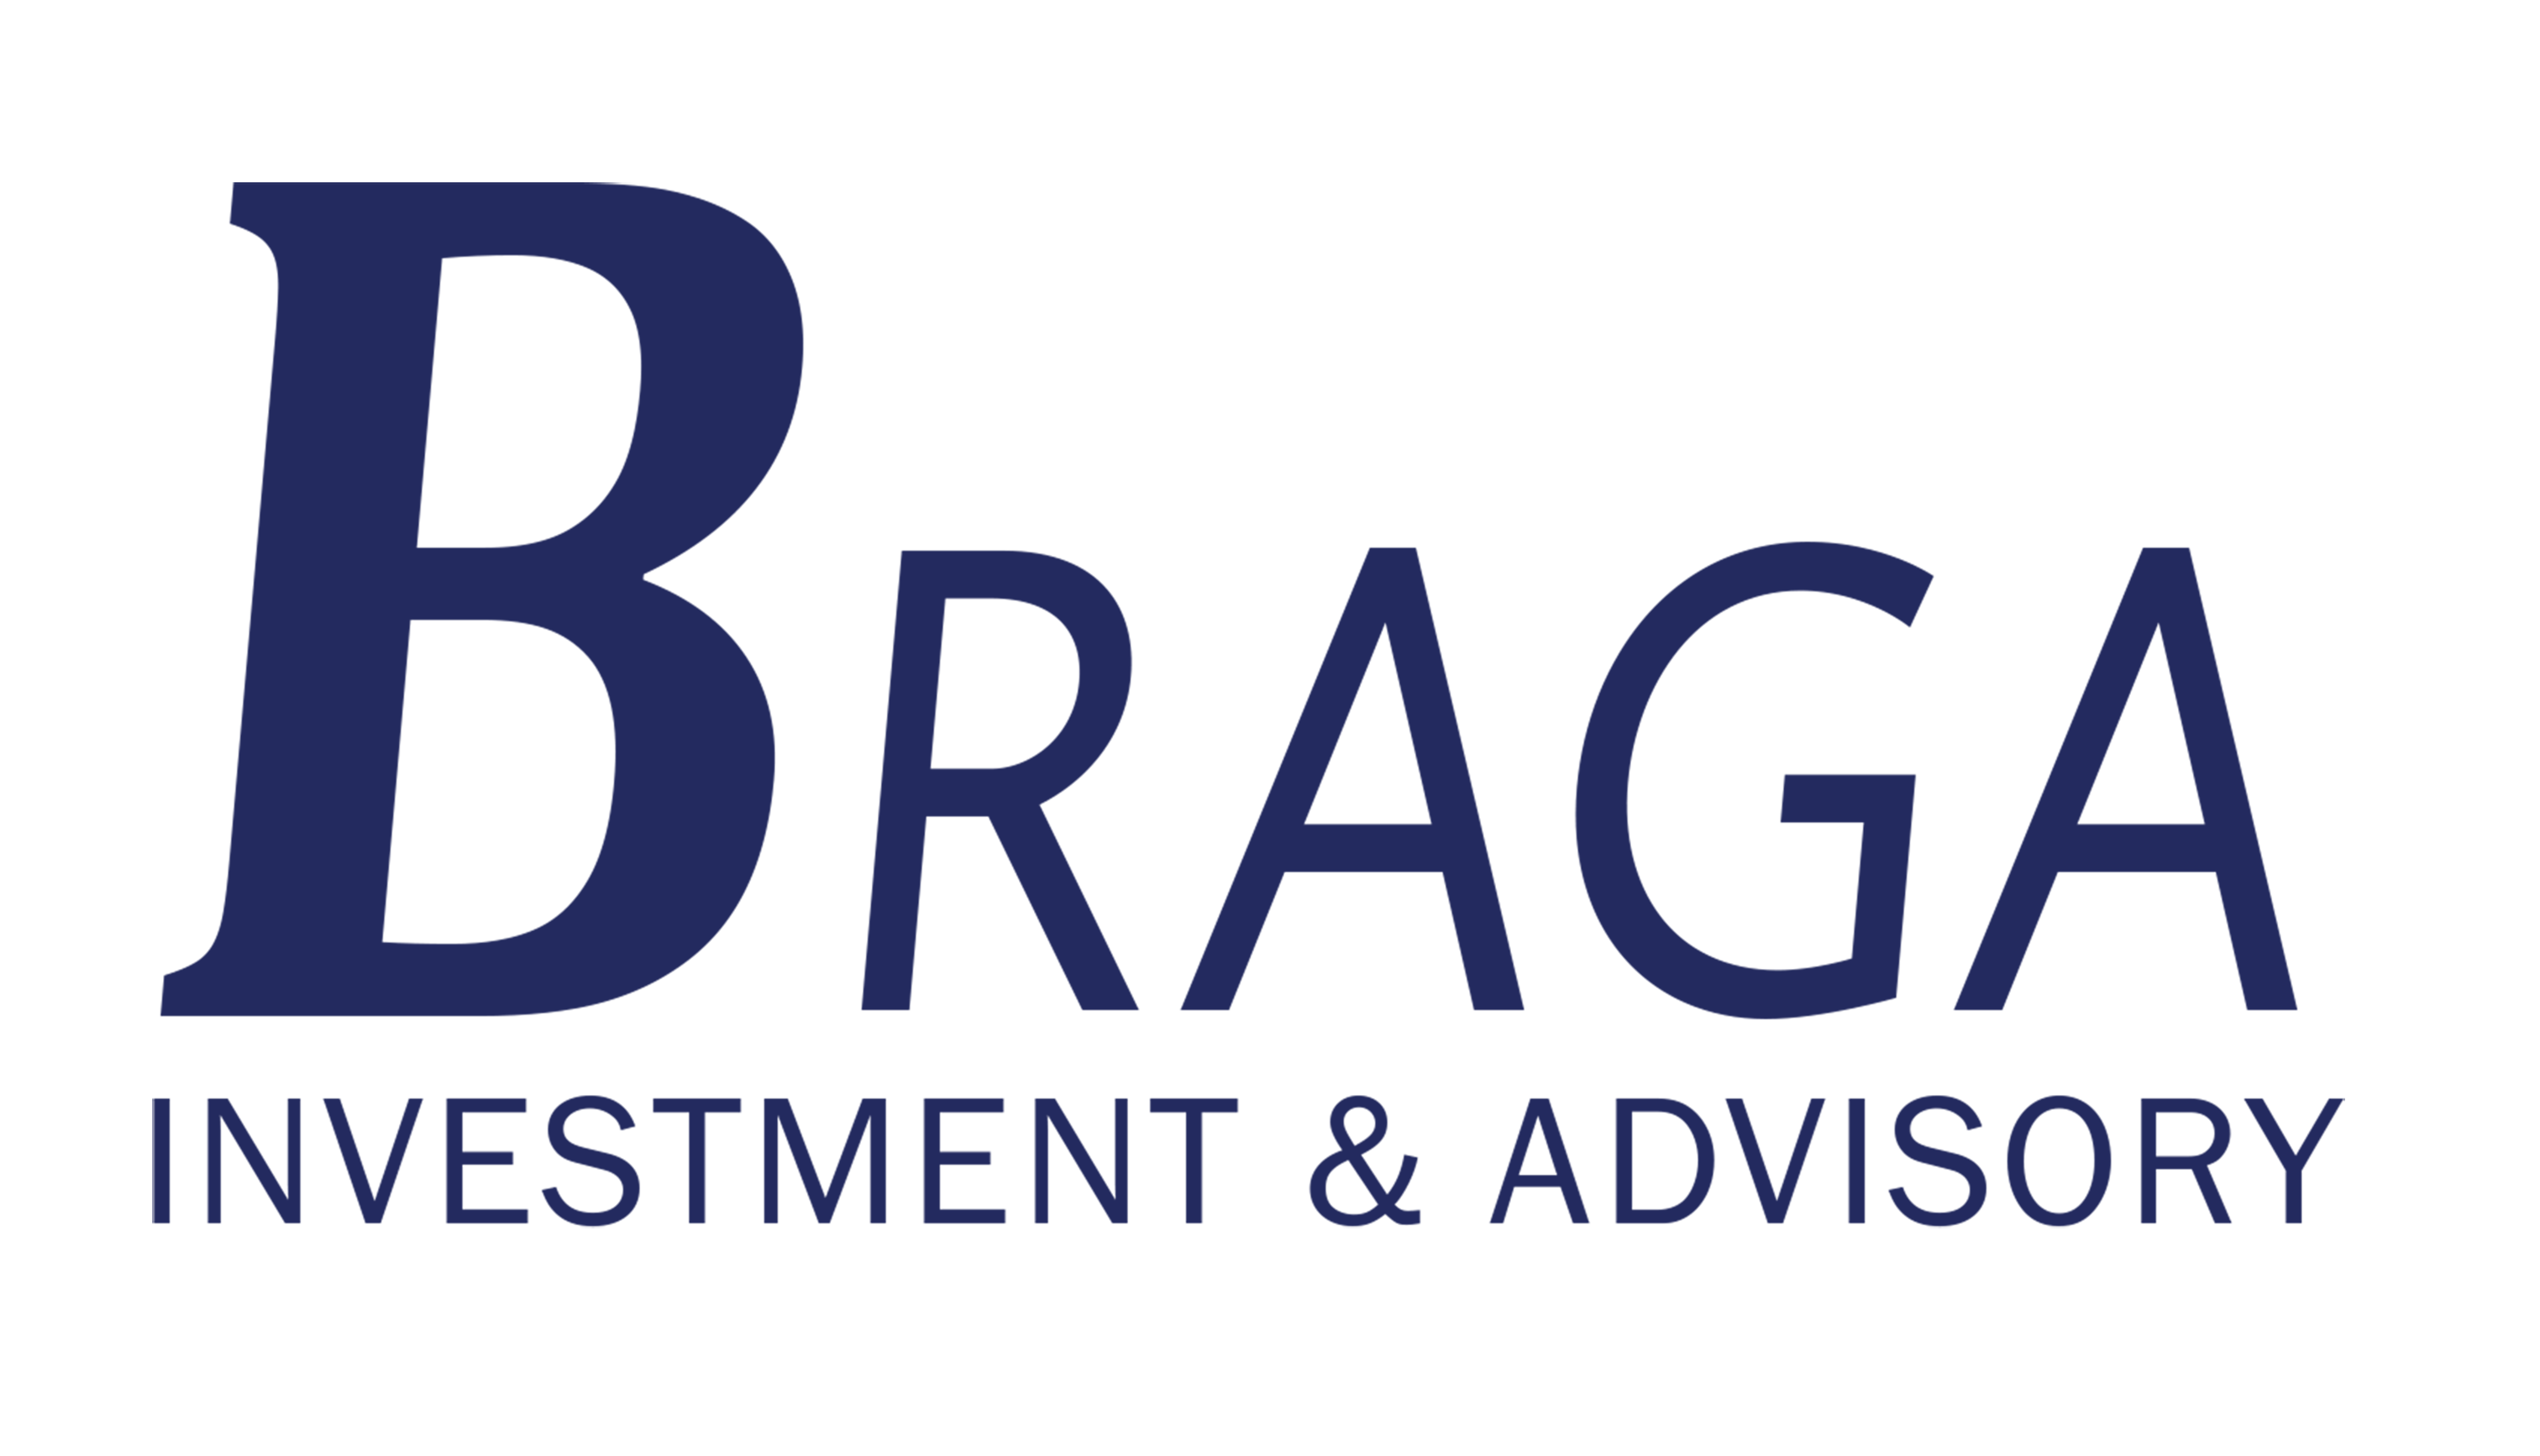 Braga Investment & Advisory